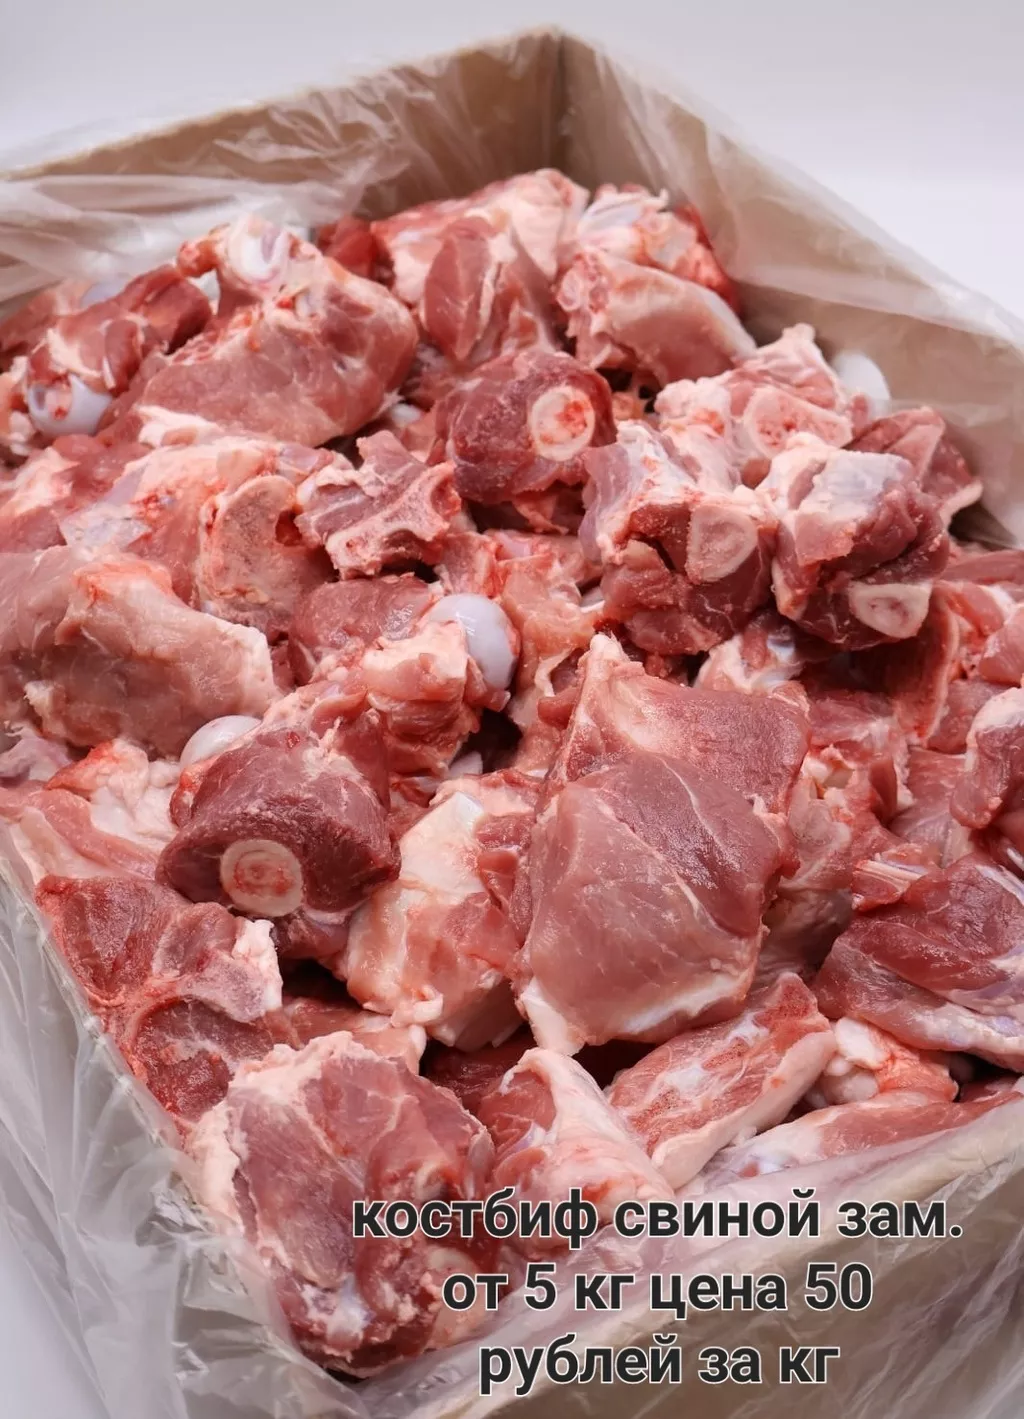 фотография продукта Костбиф свиной замороженный